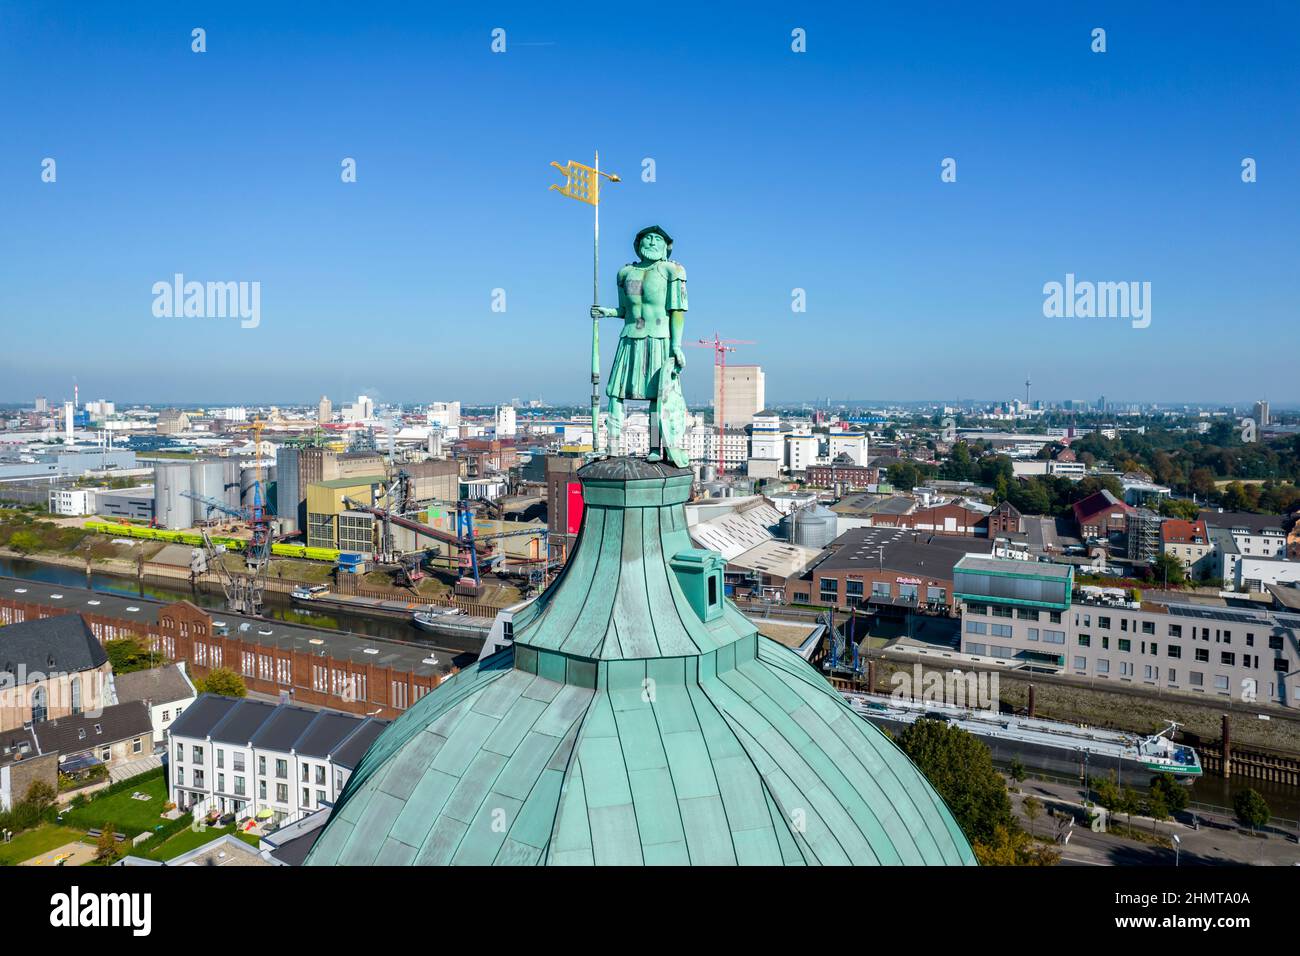 Deutschland, Neuss, Quirinus Dom und Hafenbecken Stock Photo